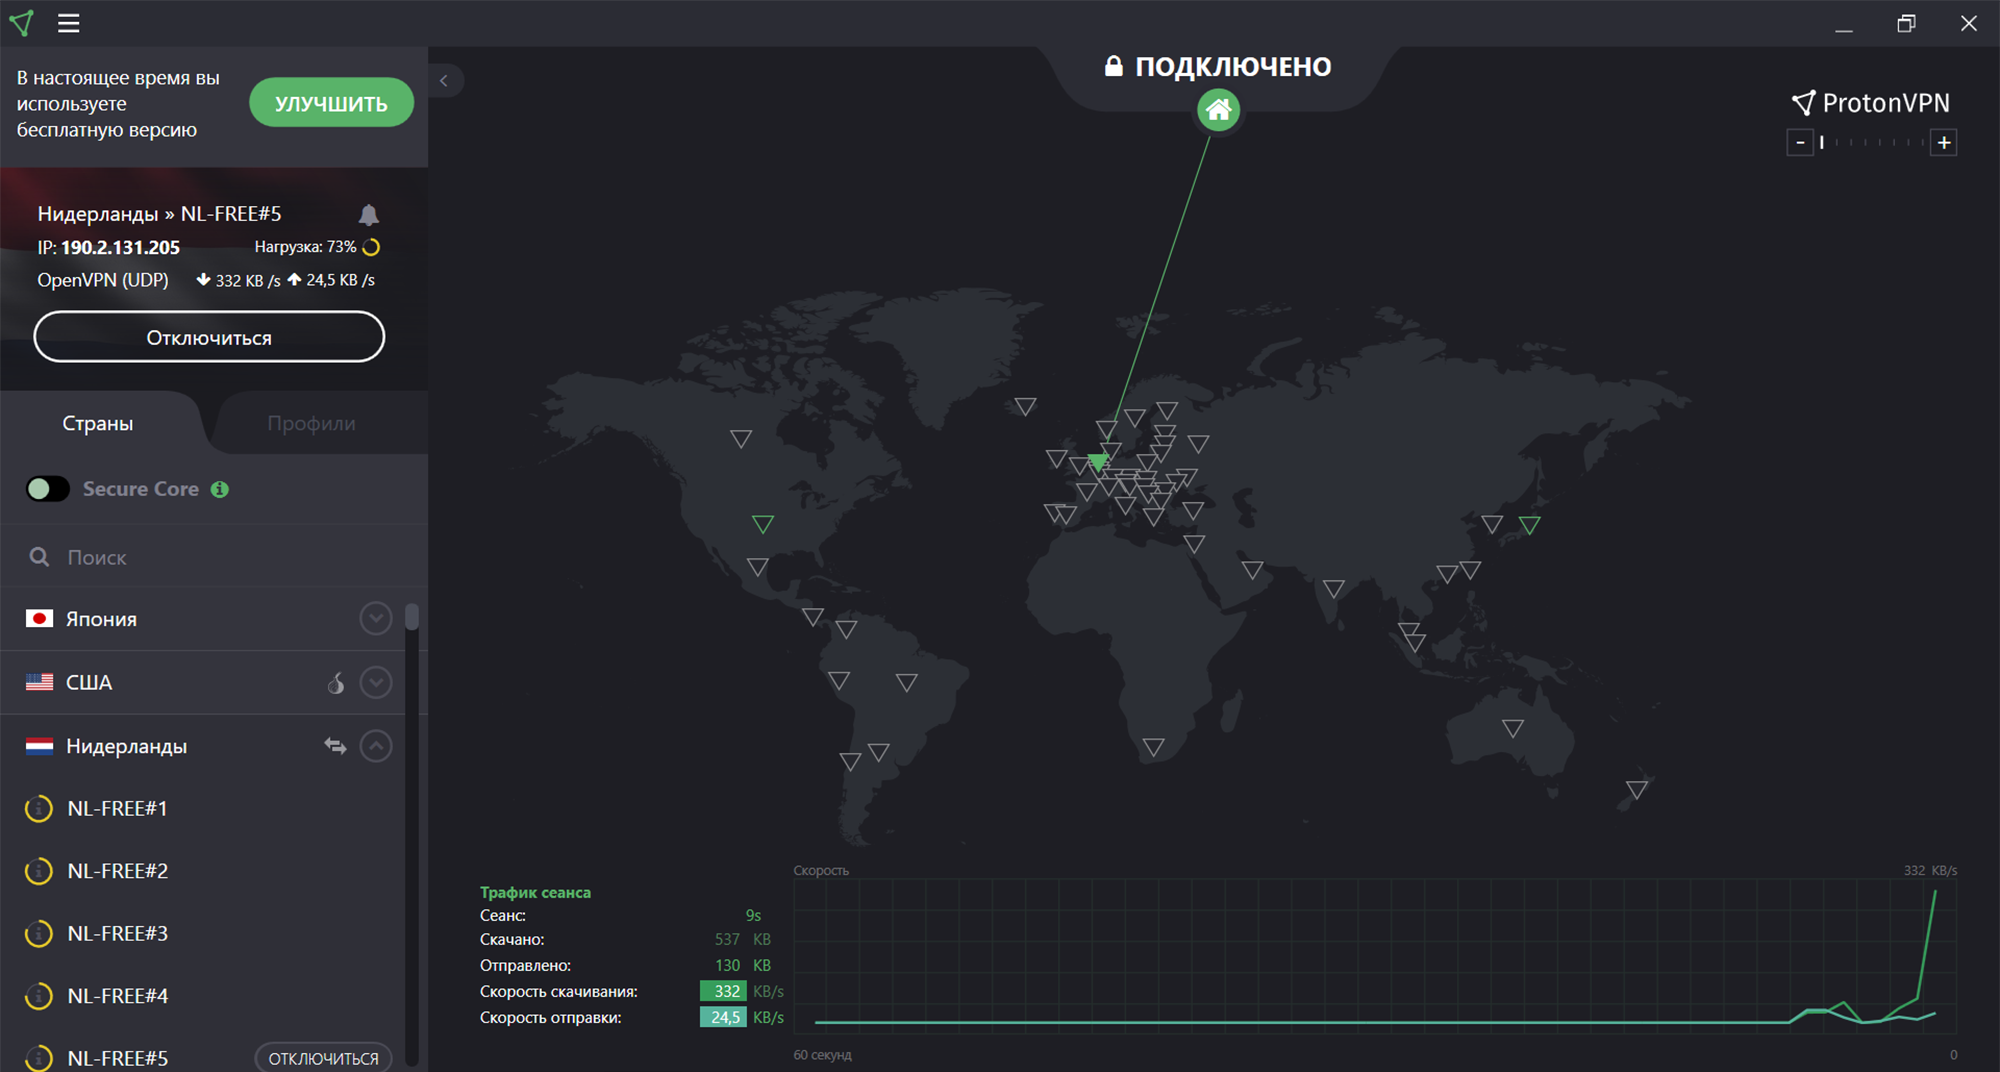 Теперь выберите страну, где находится VPN⁠-⁠сервер. Клиент сразу же соединит вас с нужным сервером